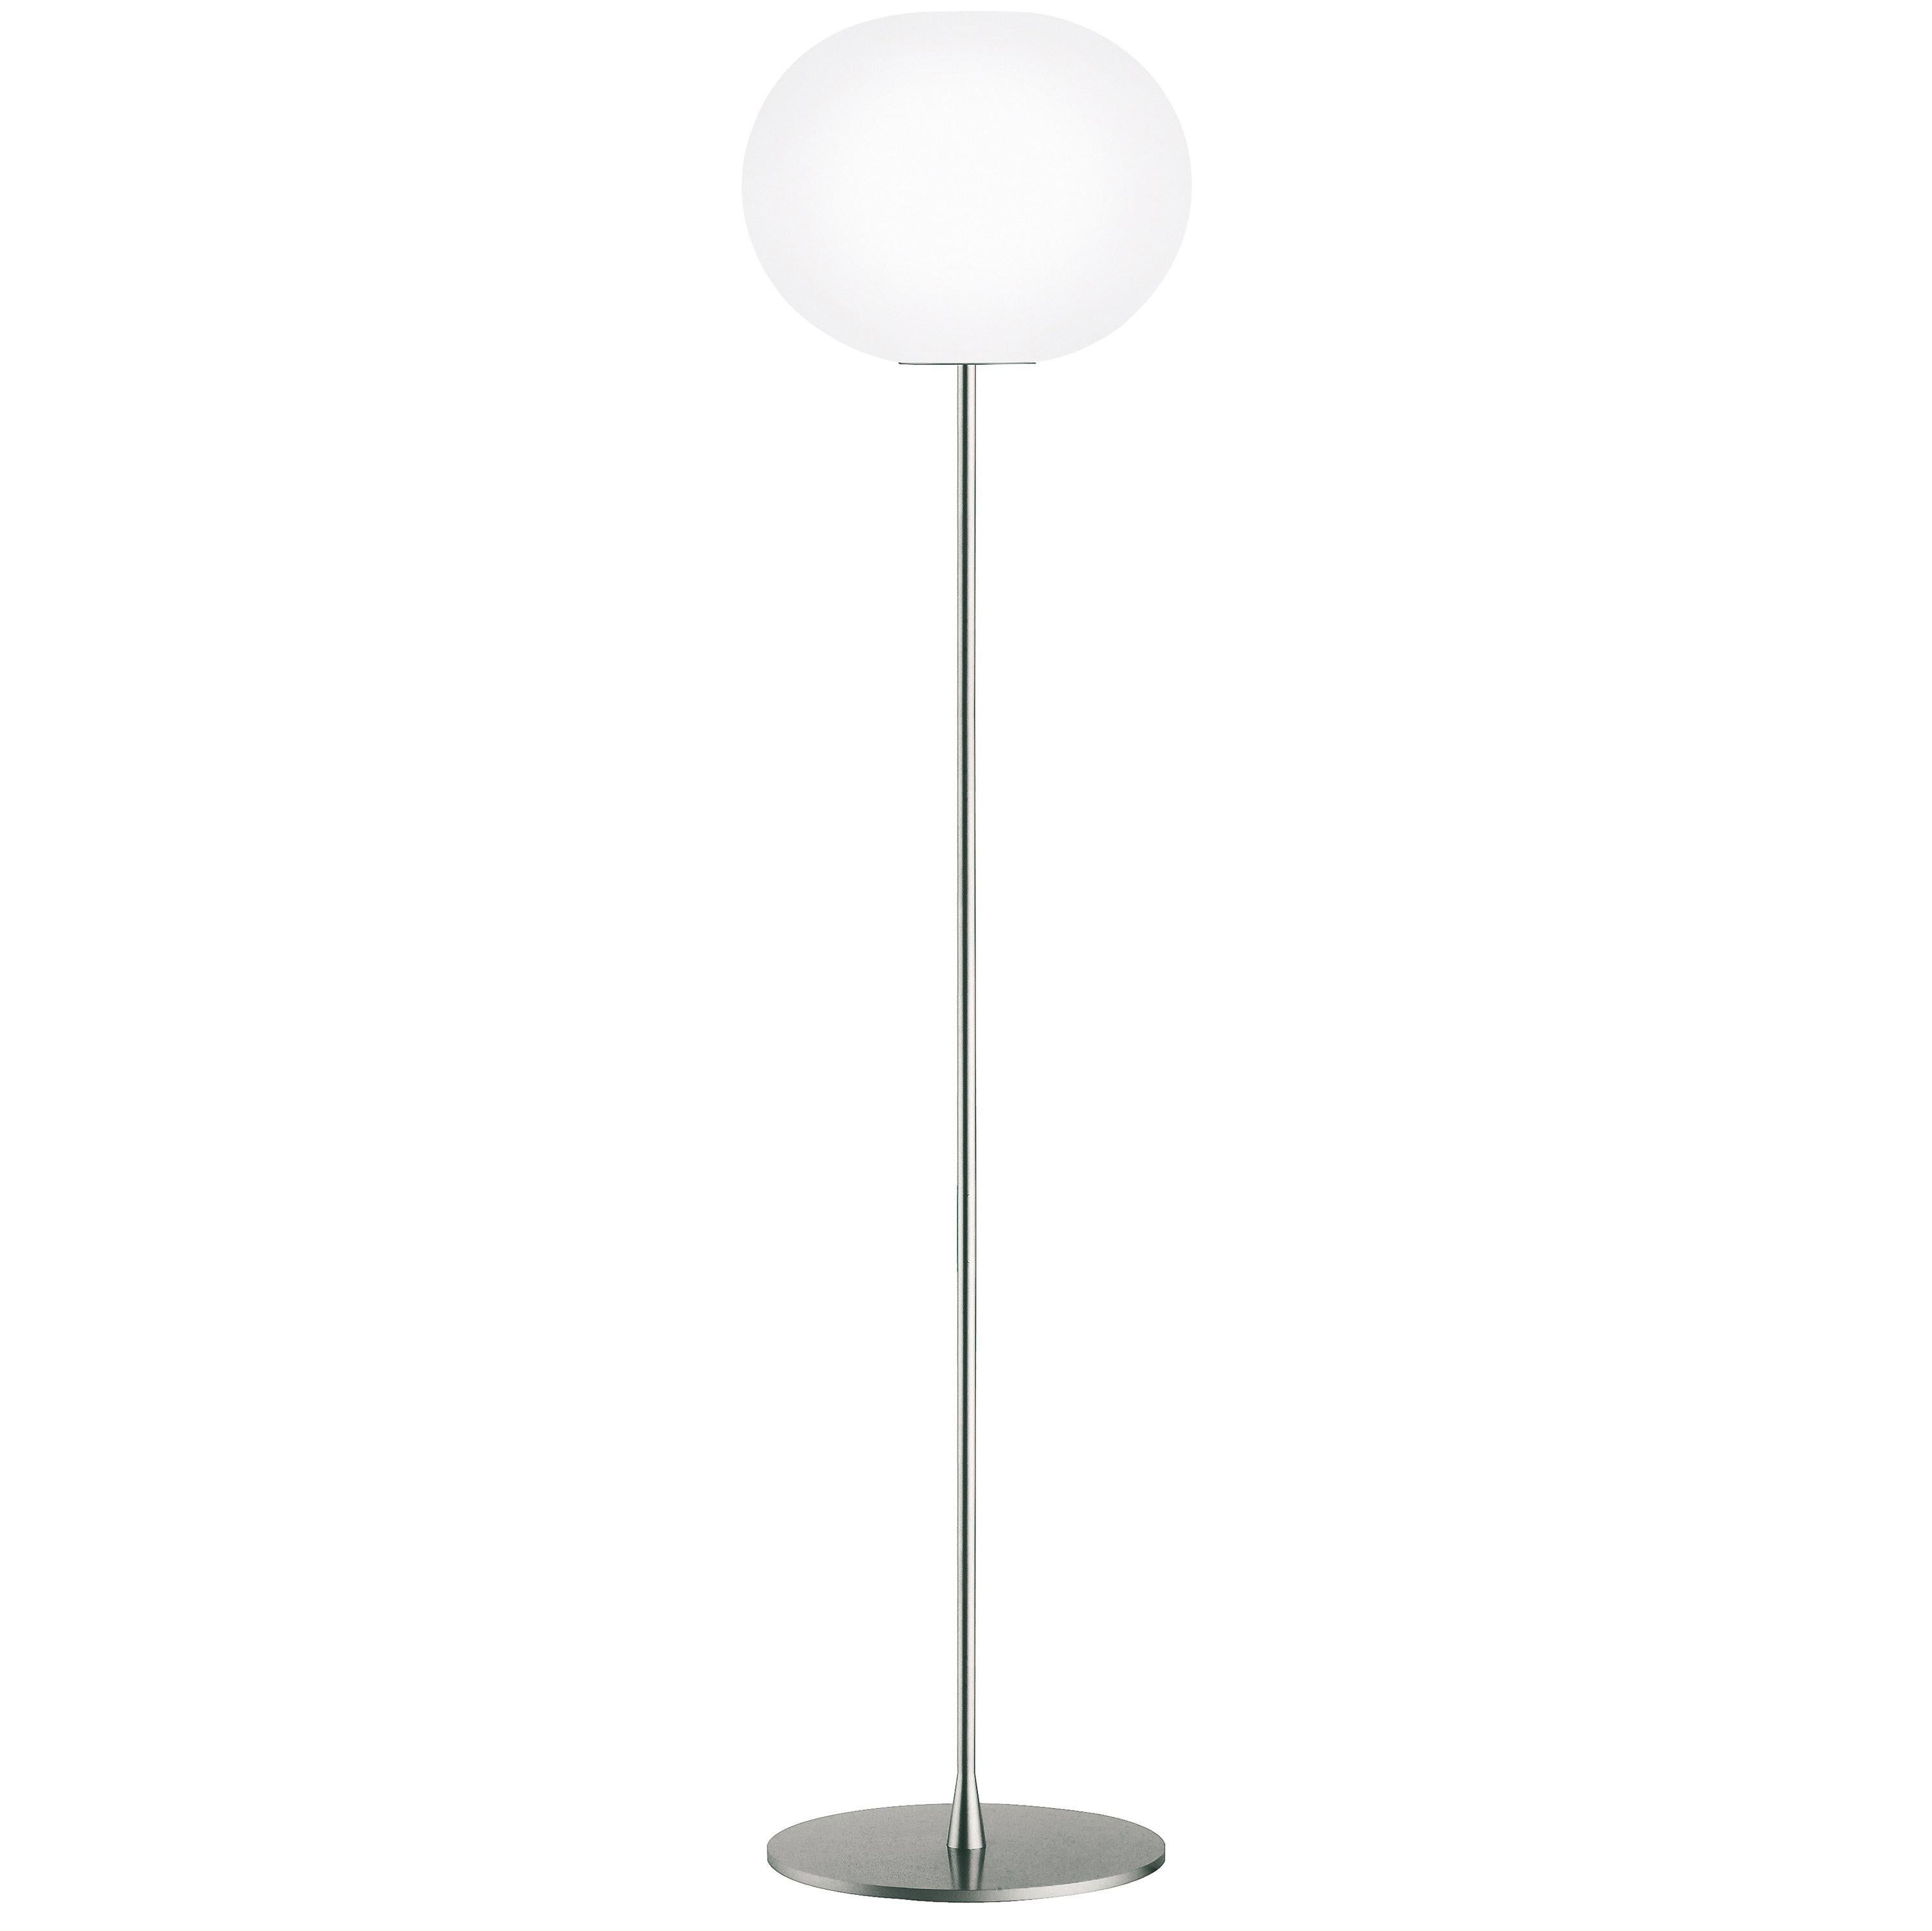 Jasper Morrison Modern Sphere Glass Stainless Steel F3 Floor Lamp for FLOS